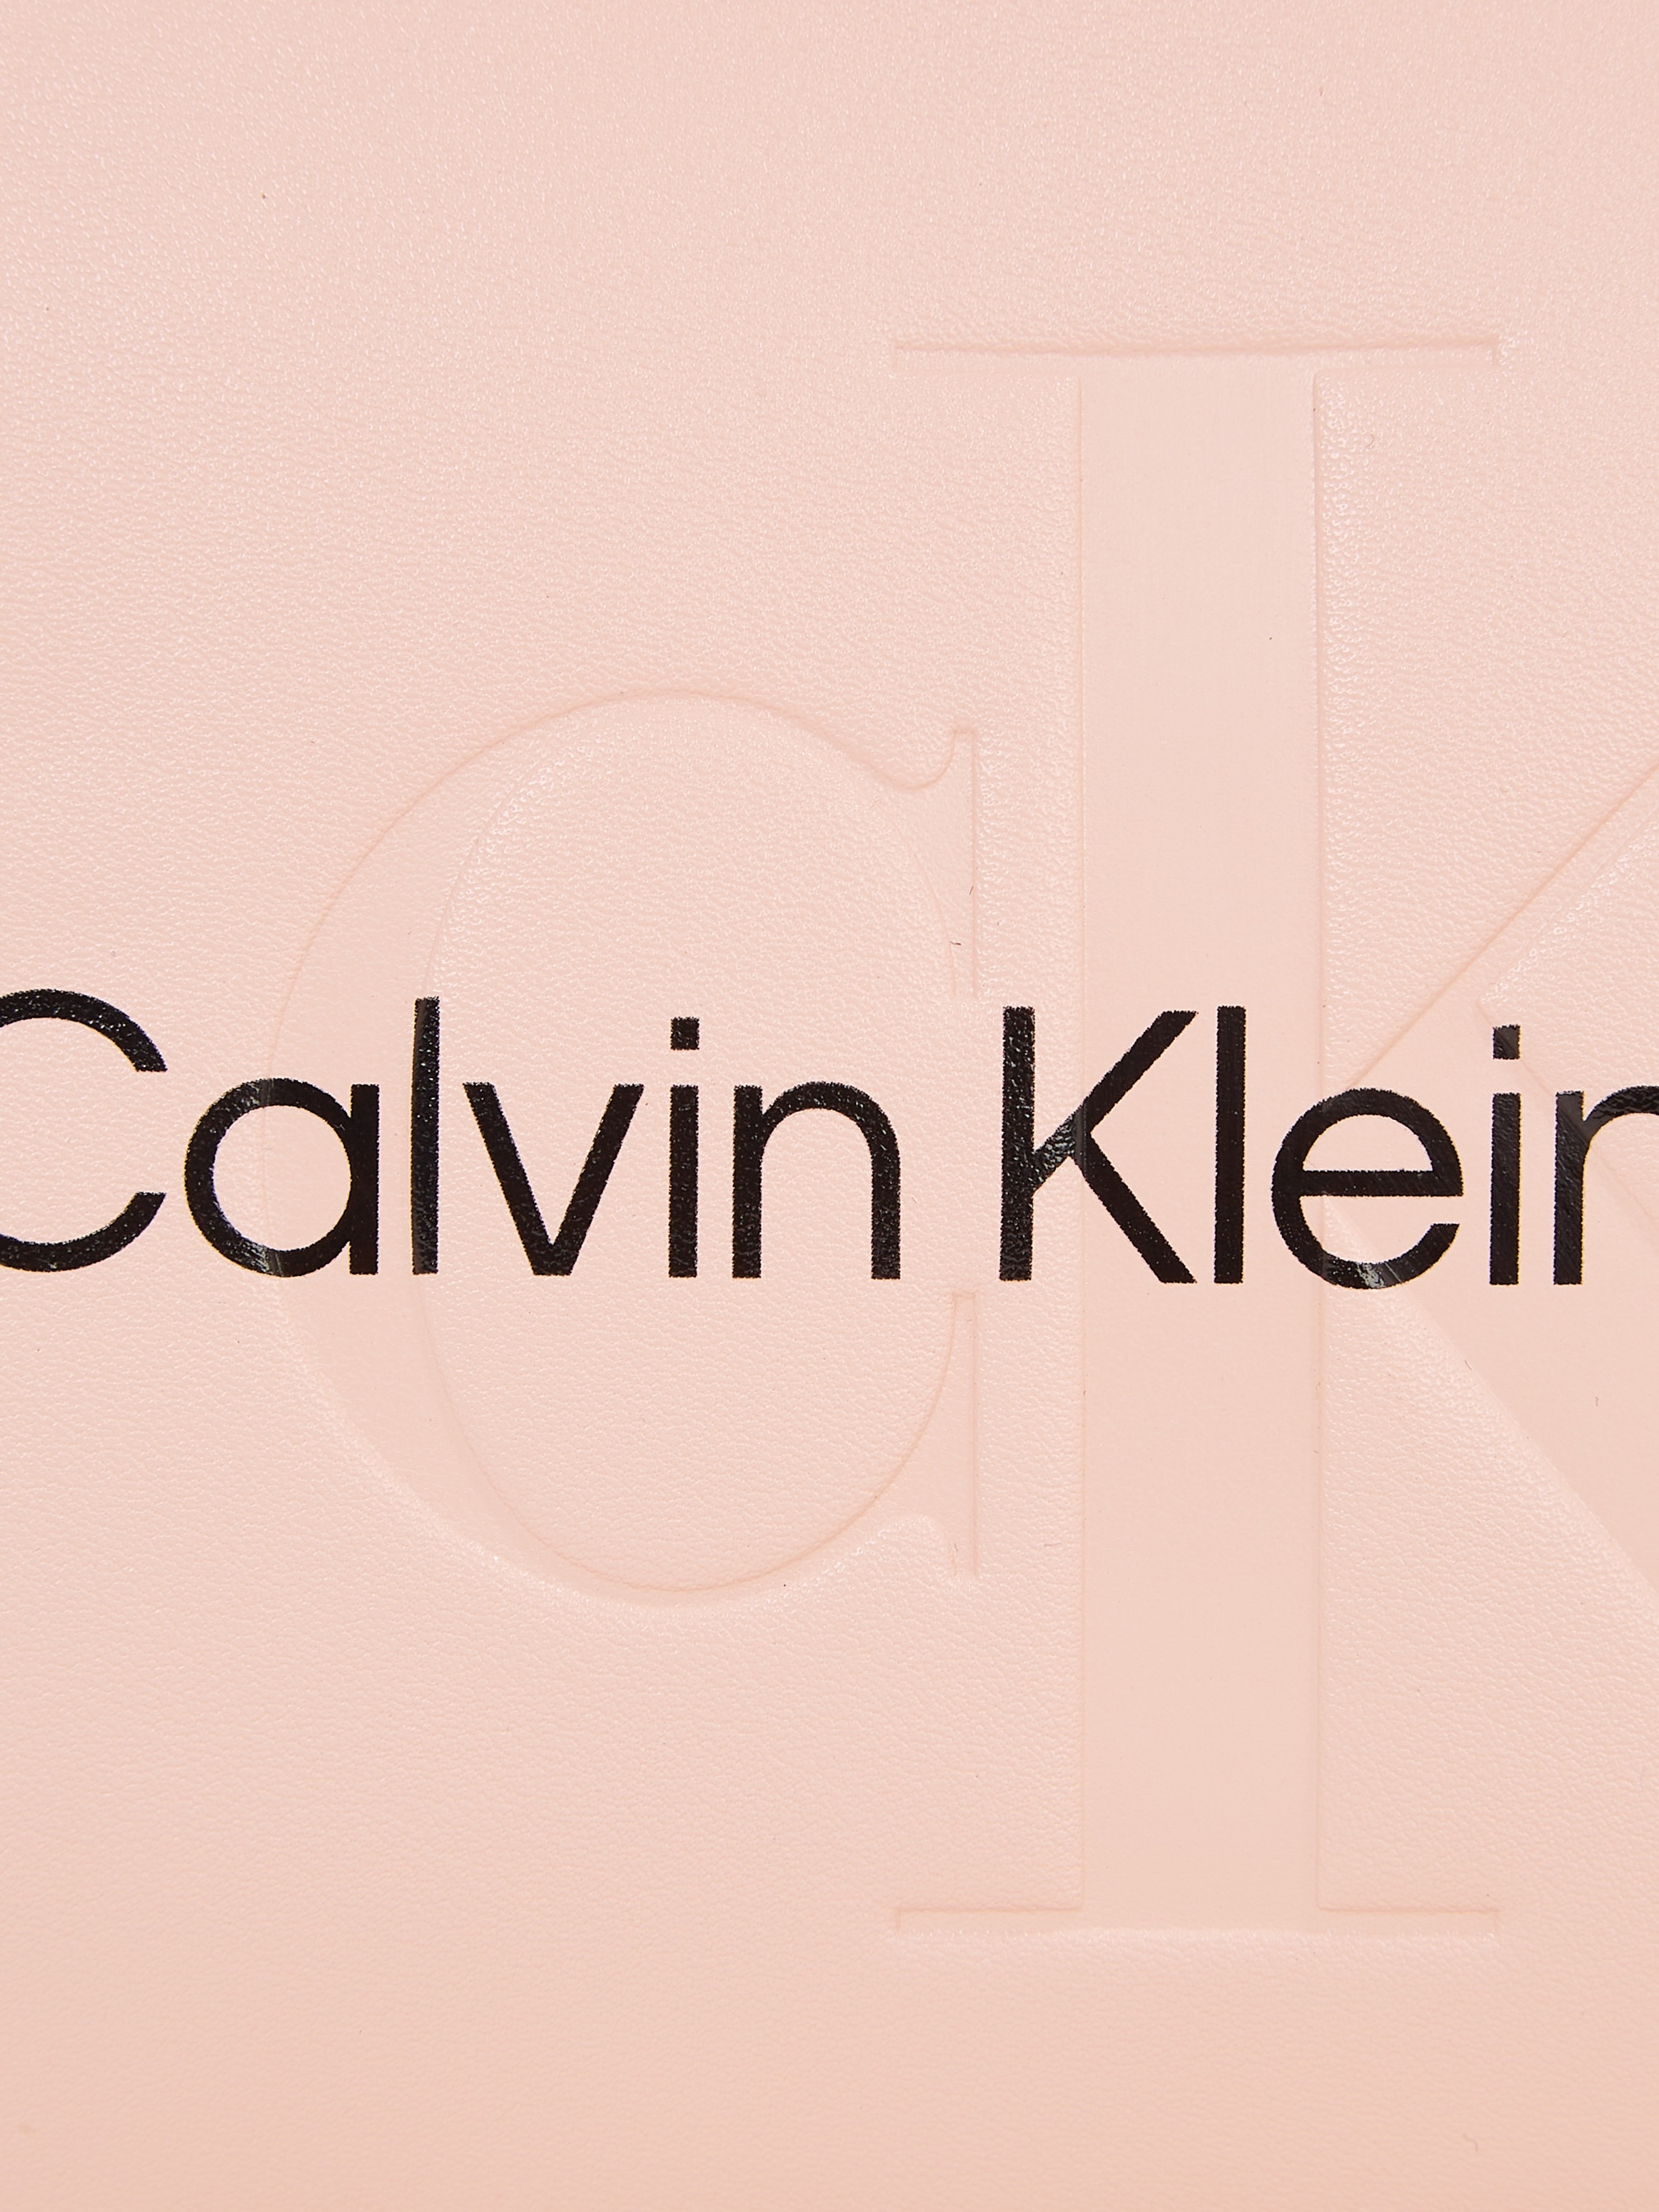 Calvin Klein Jeans Schultertasche »SCULPTED SHOULDER POUCH25 MONO«, mit großflächigem Markenlogo vorne